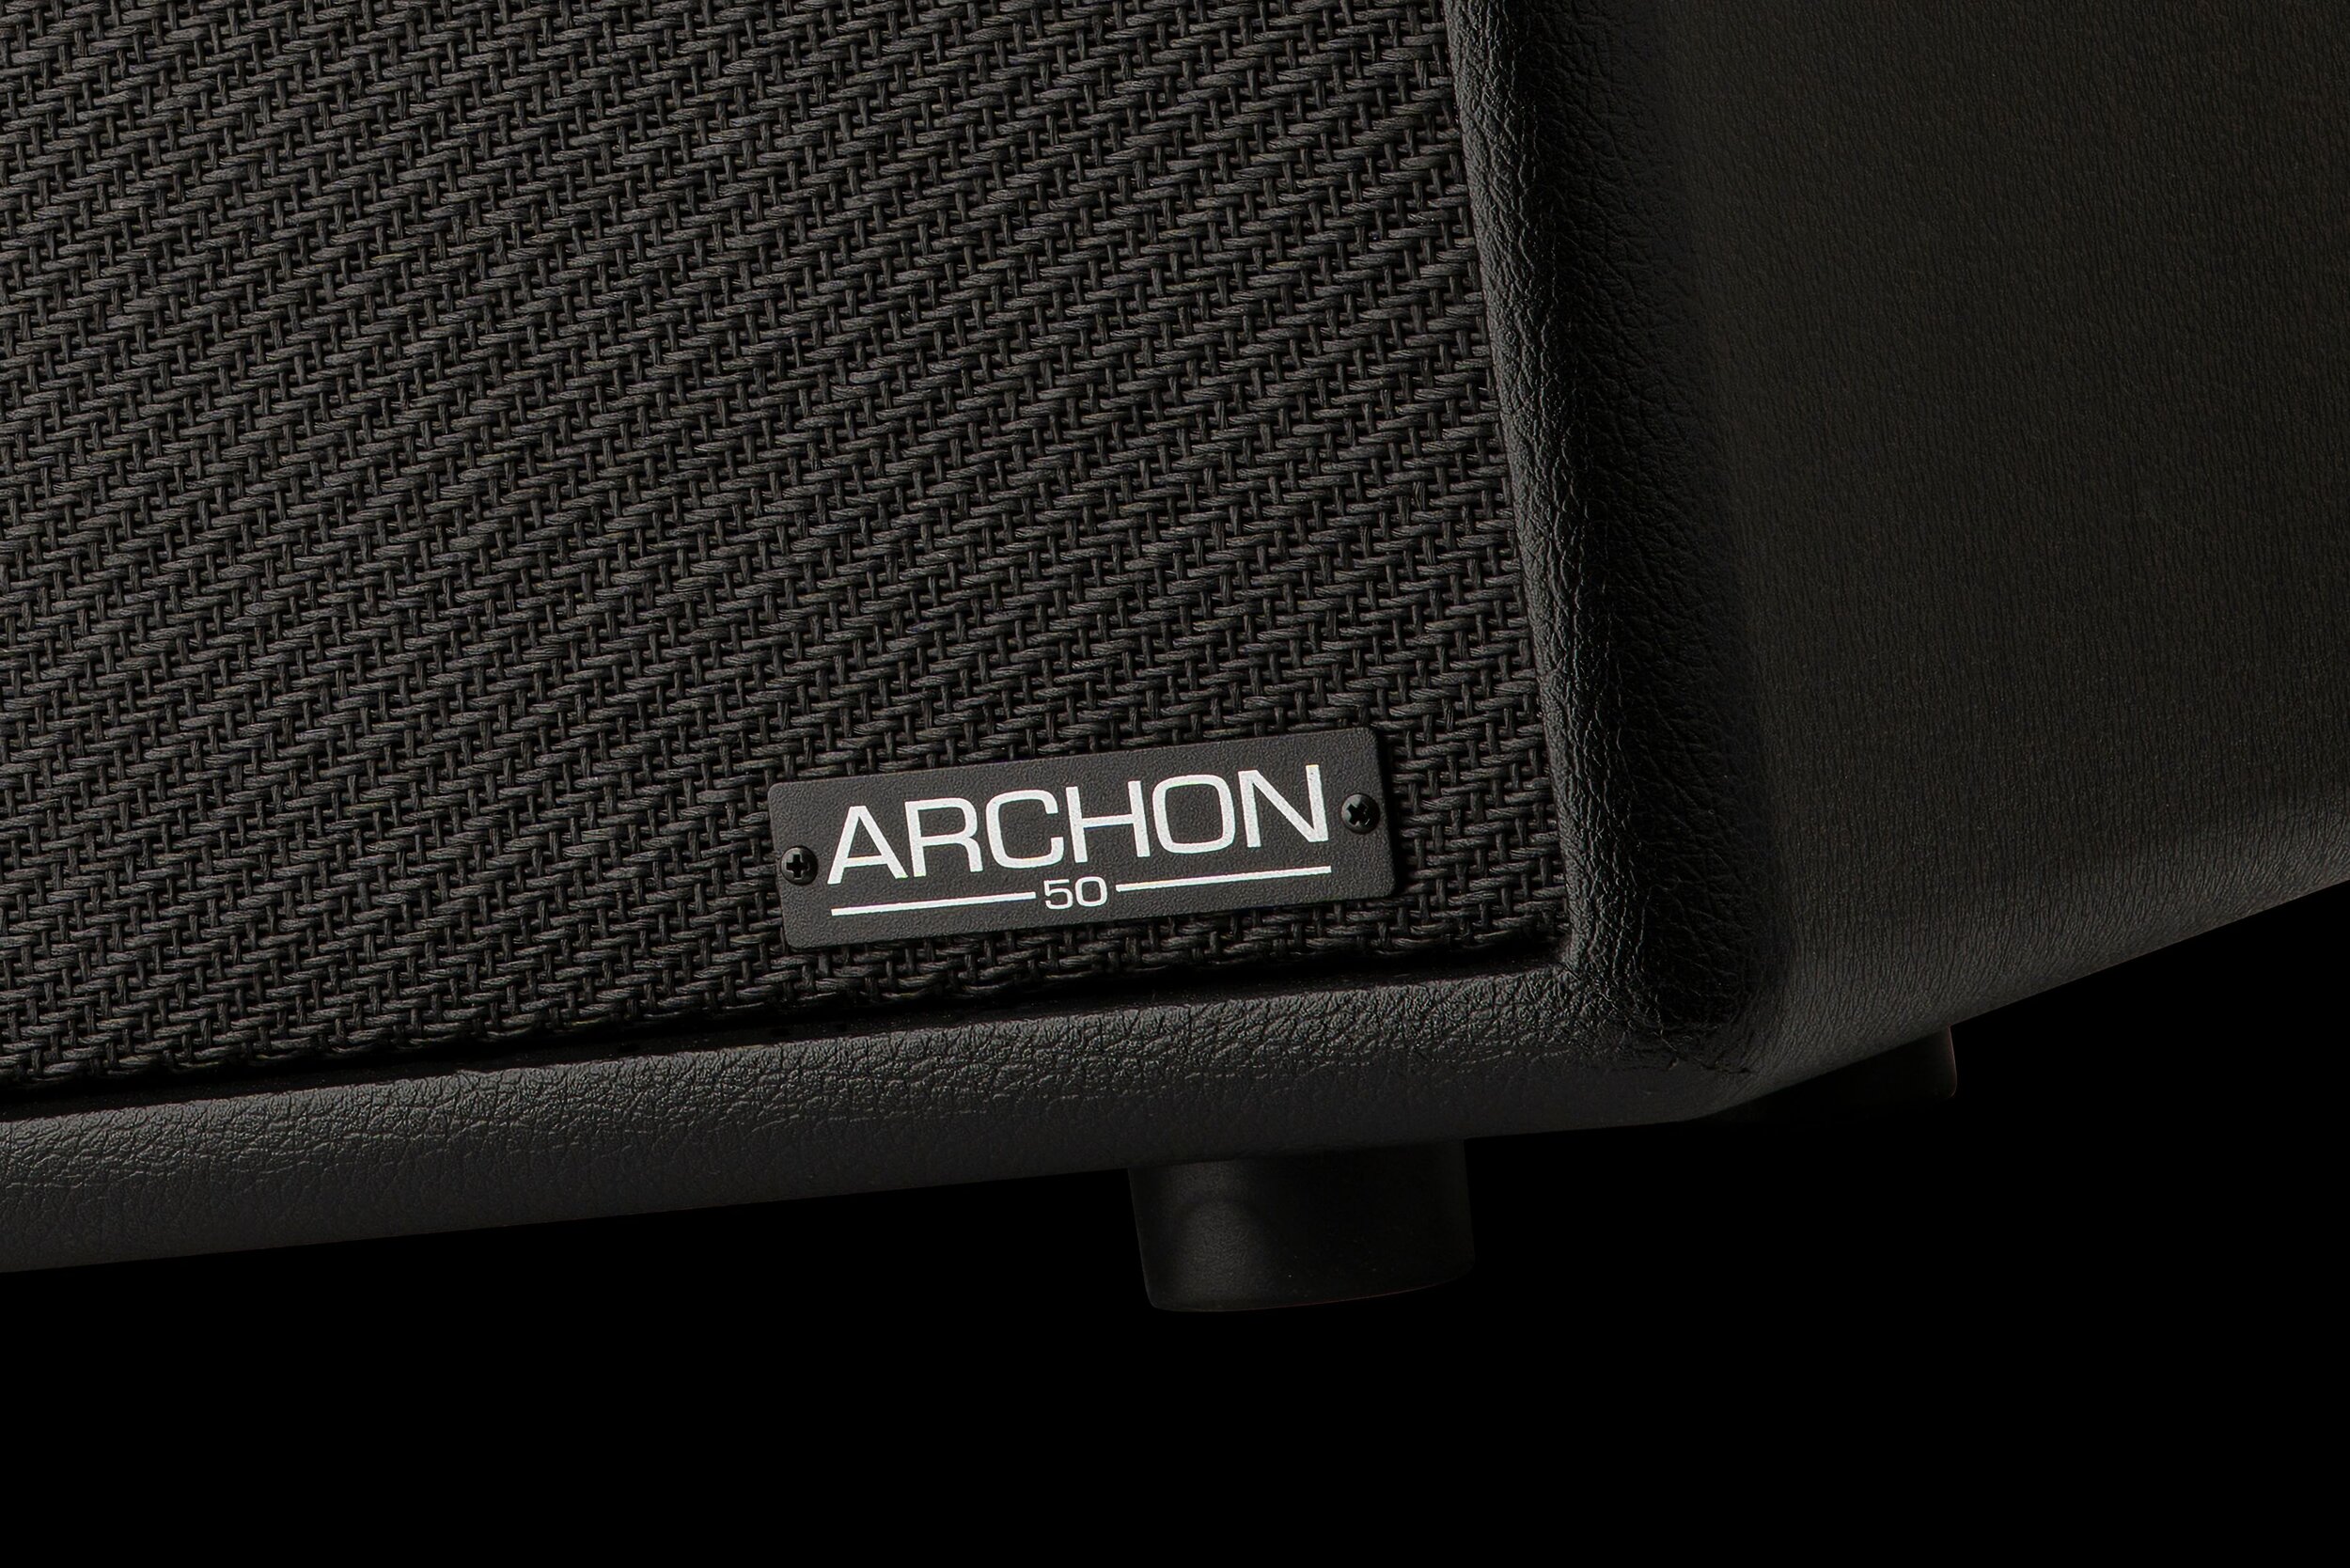  Bitte auf das Bild klicken um weitere Informationen zu erhalten  Archon 50 Combo inklusive Fußschalter  unverbindliche Preisempfehlung:  1.459,—€ 